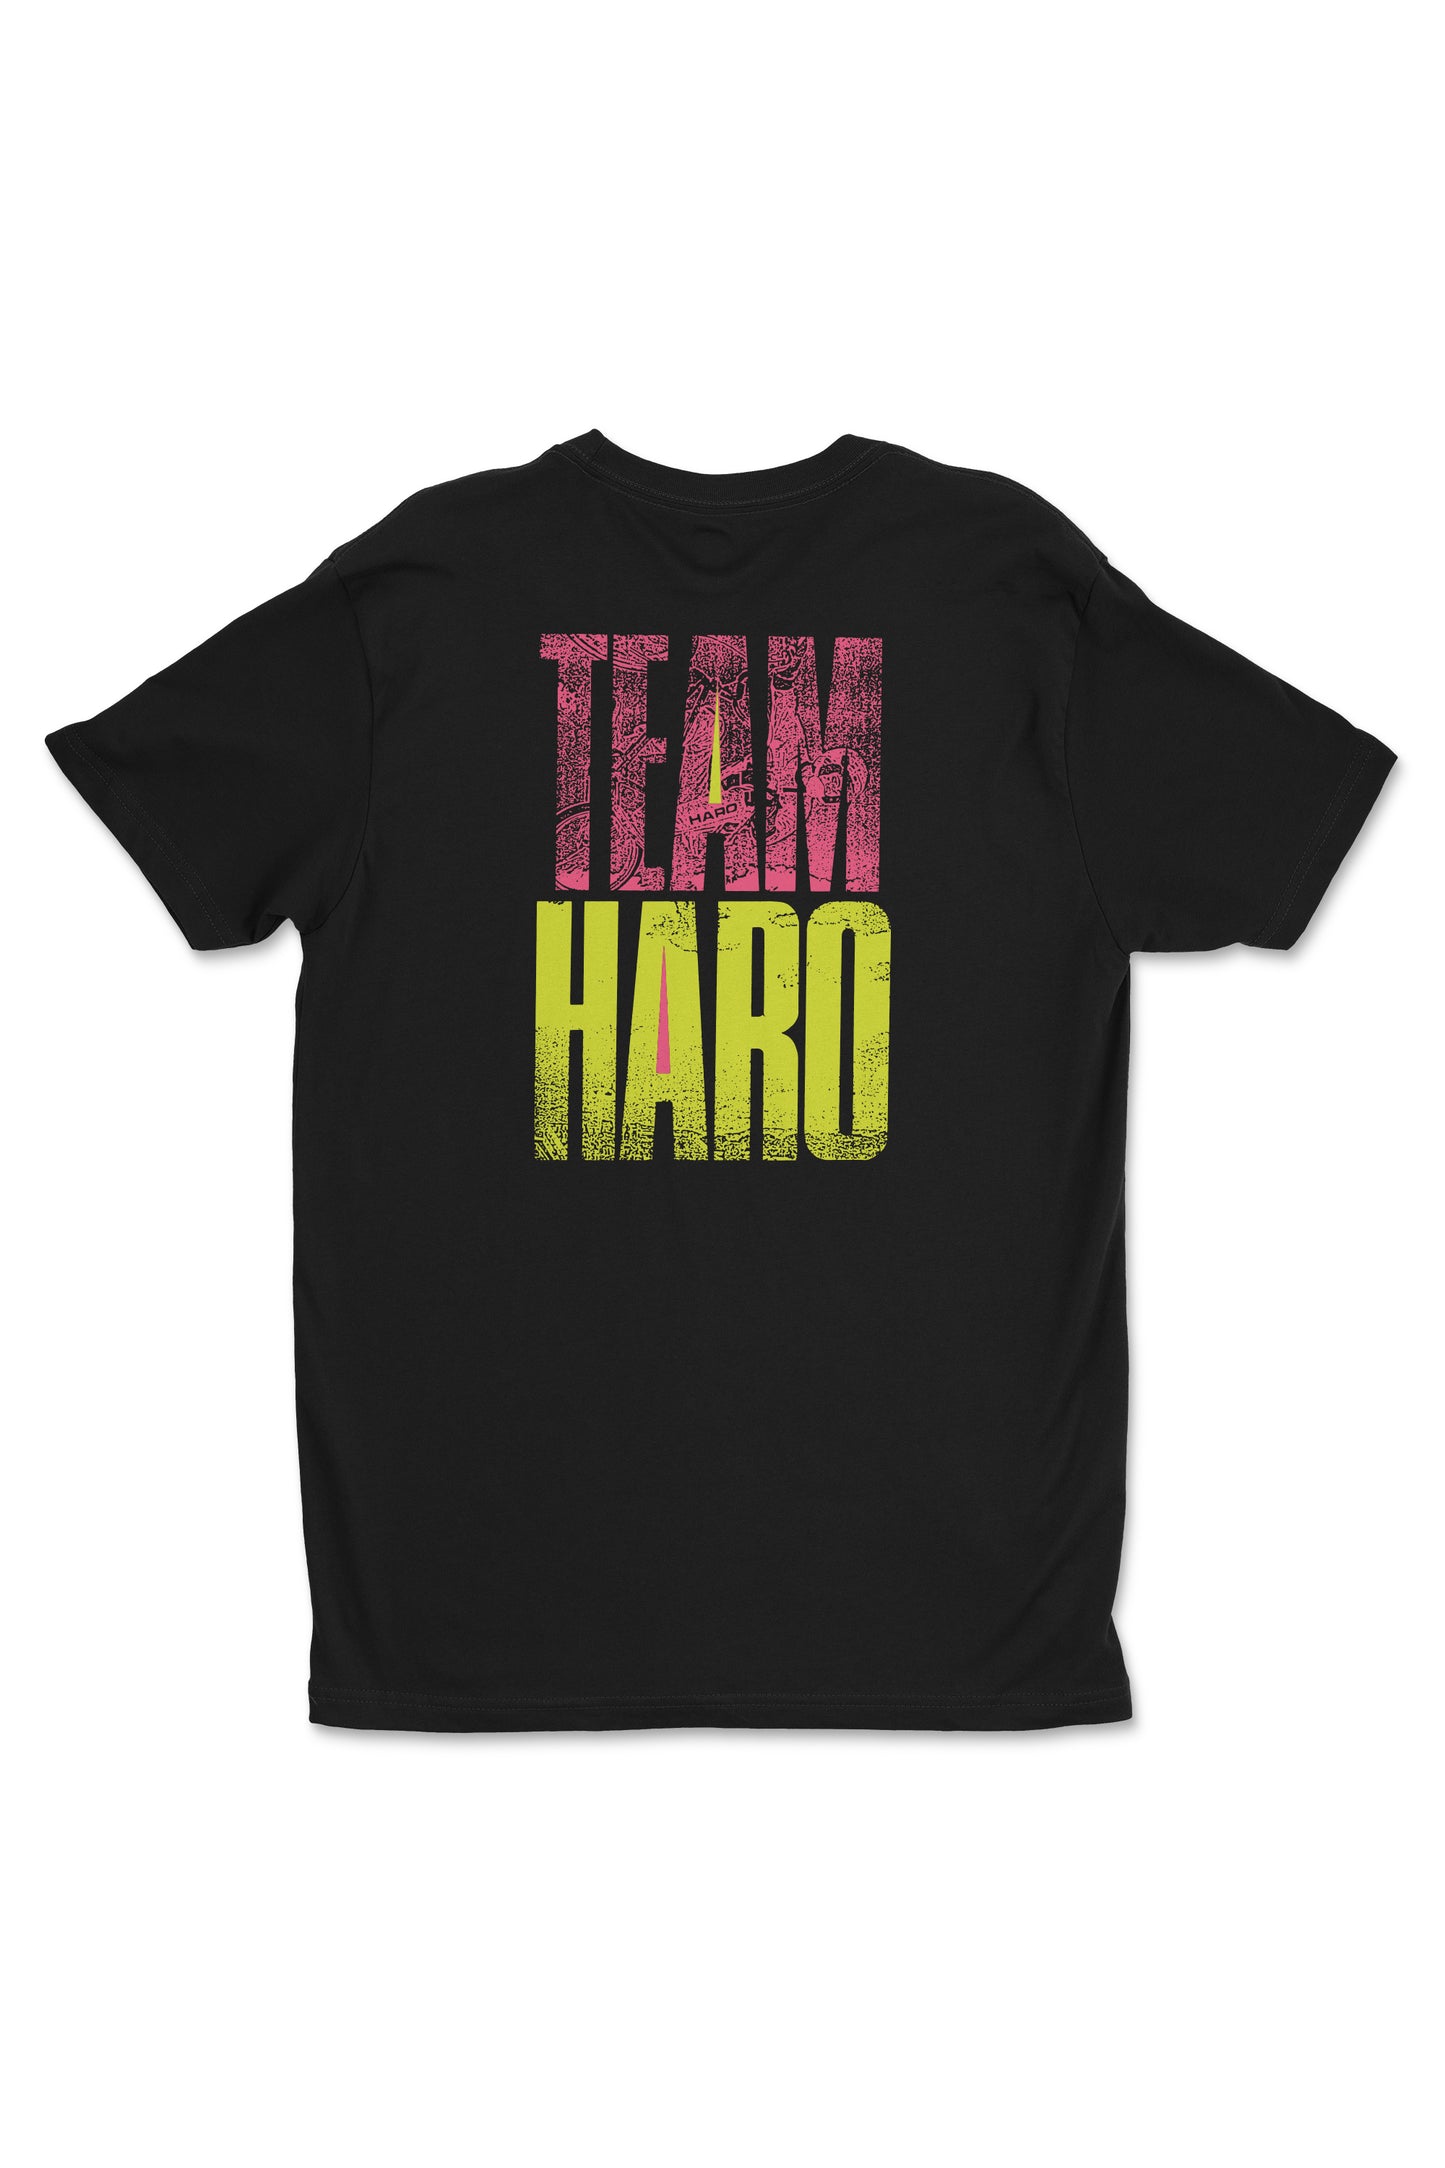 Team Haro Shirt